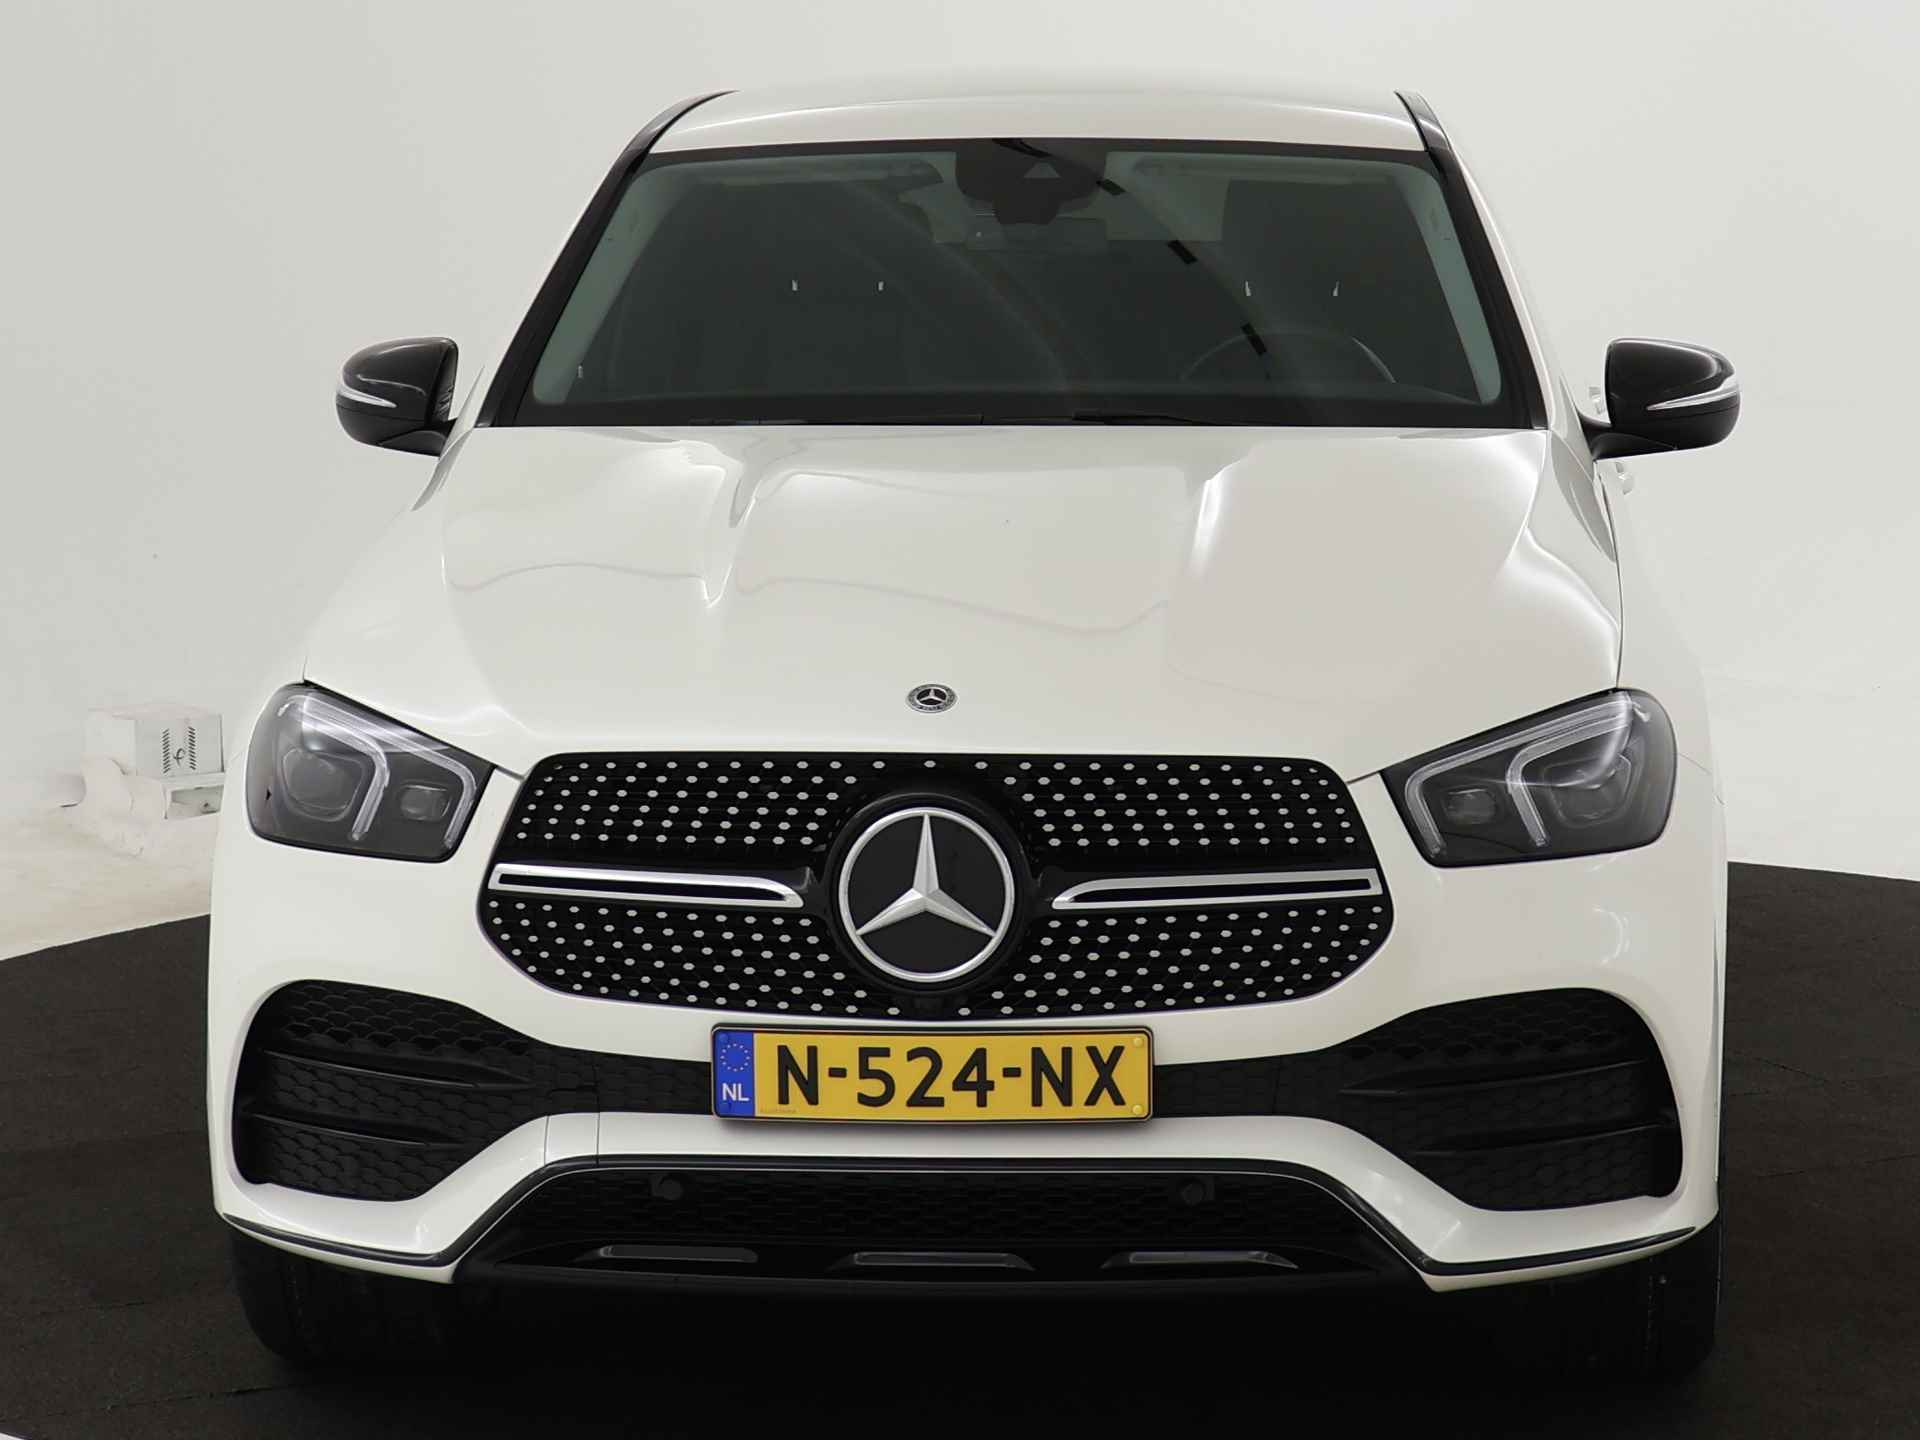 Mercedes-Benz GLE 350 e 4-MATIC AMG Nightpakket Limited 5 spaaks lichtmetalen velgen | Trekhaak | Airmatic | Treeplanken | Alarm klasse 3 |  Augmented Reality | sfeerverlichting | DAB | Parking support | inclusief 24 maanden MB Certified garantie voor europa - 27/45